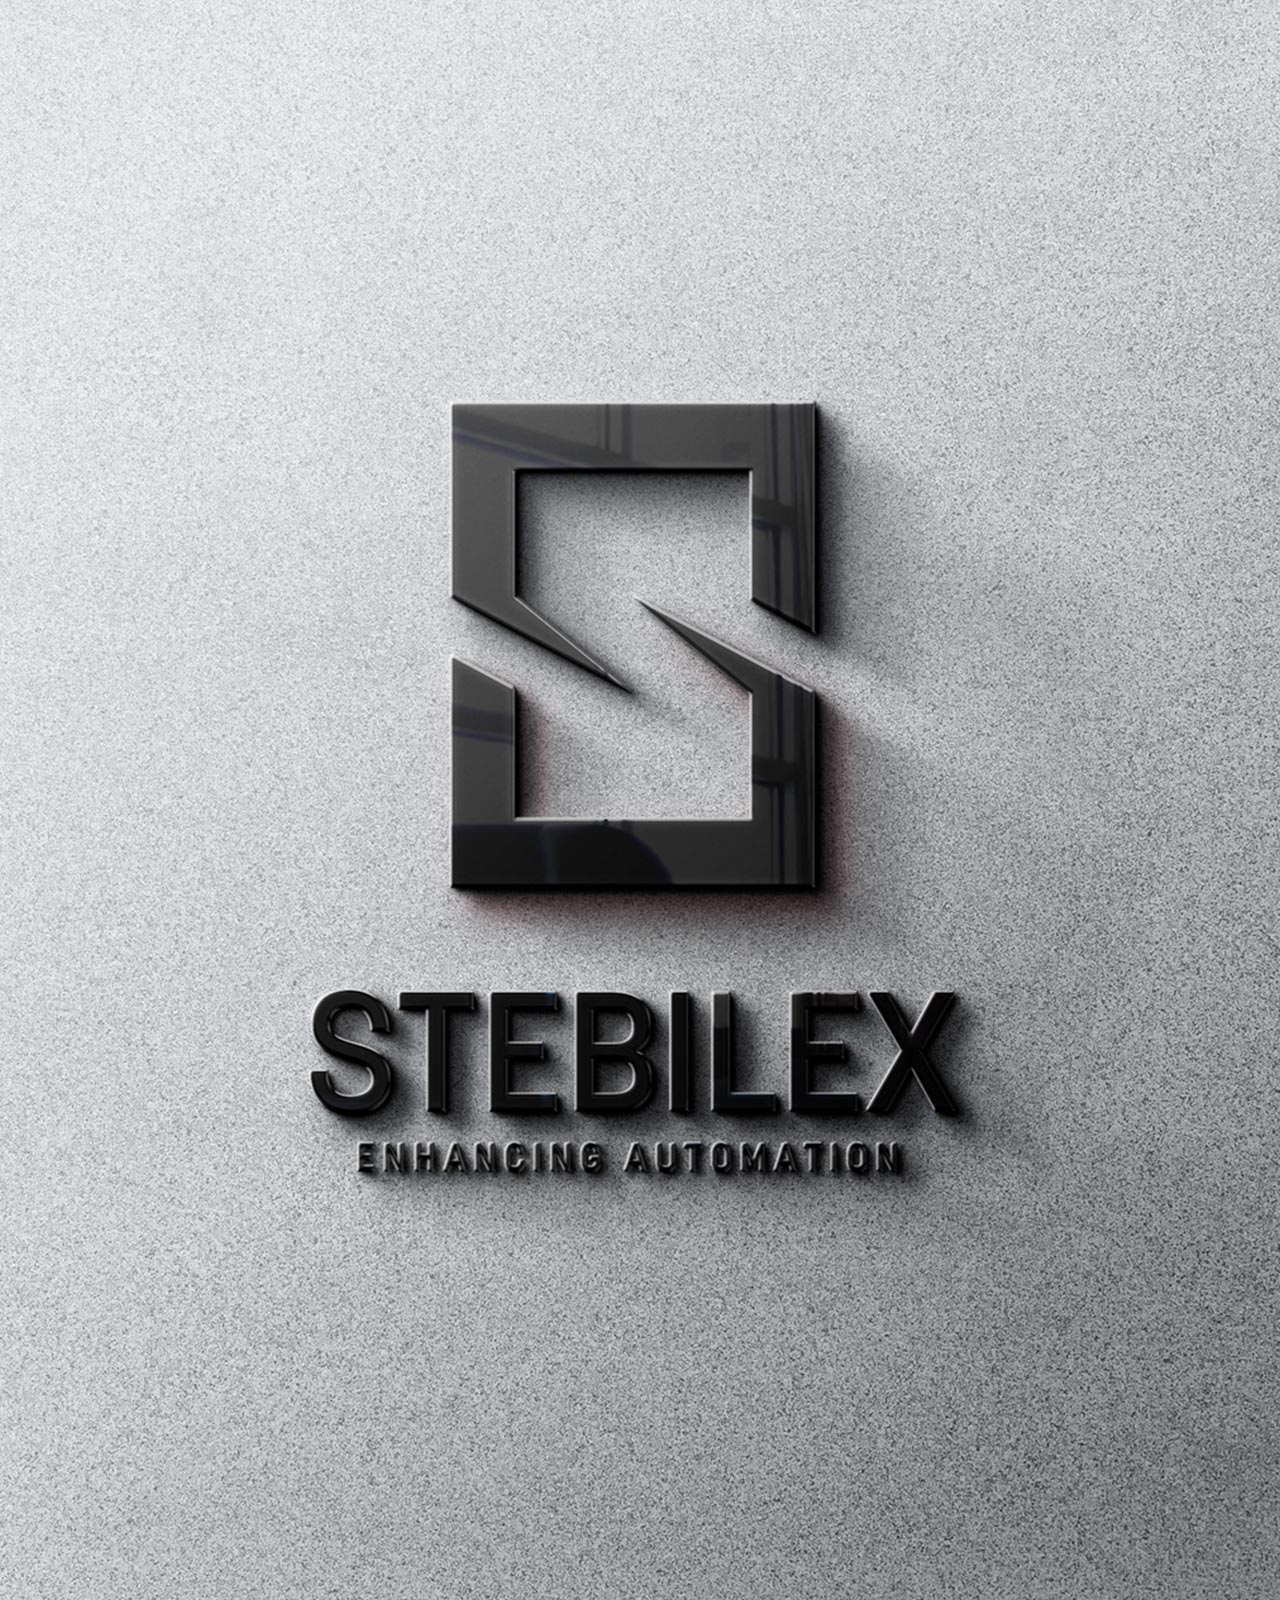 stebilex-systems-uae-logo-wall